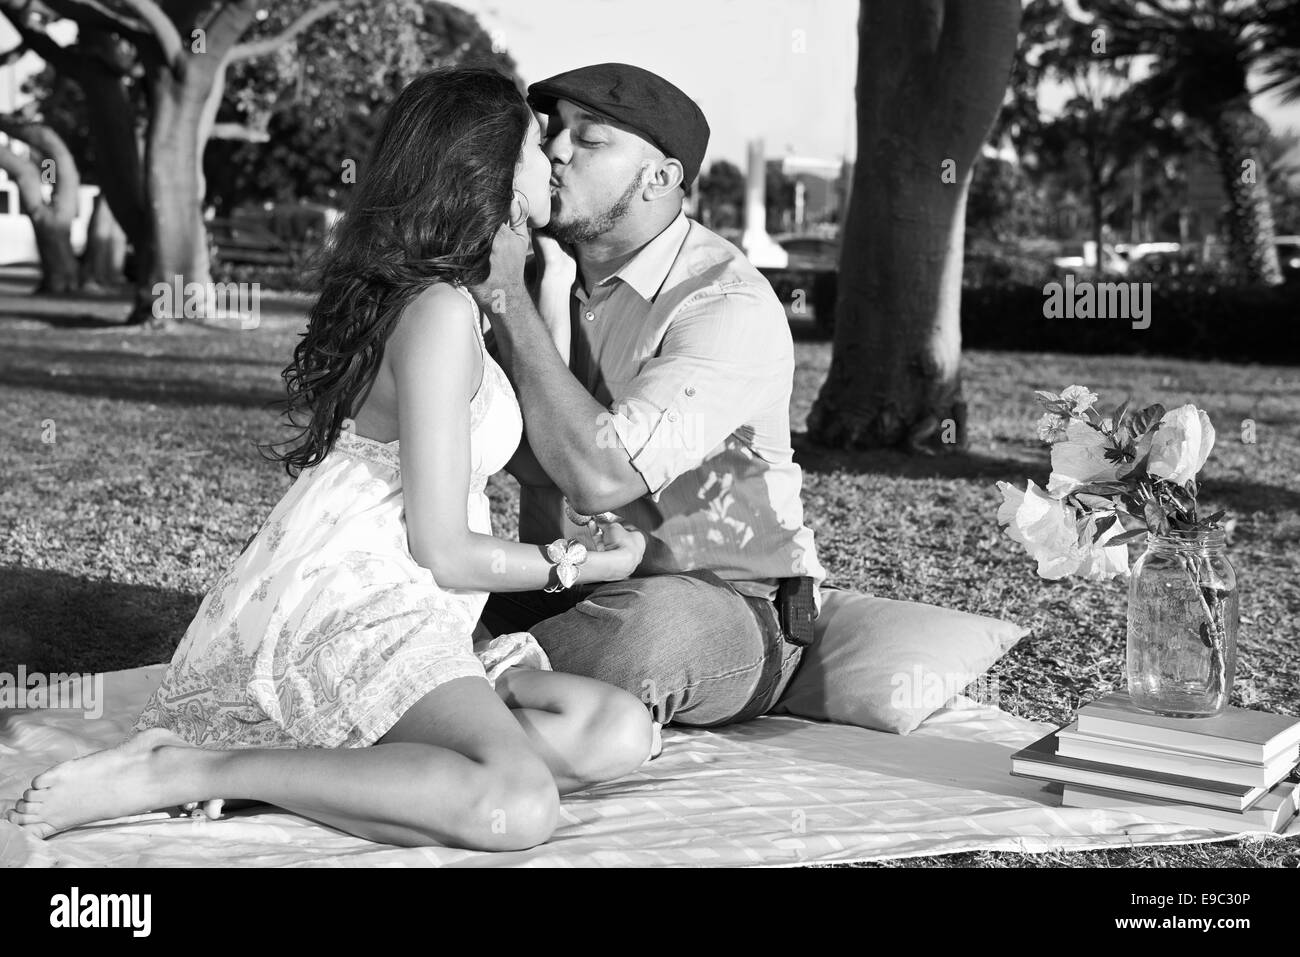 Couple kissing in park au cours d'un pique-nique en noir et blanc Banque D'Images